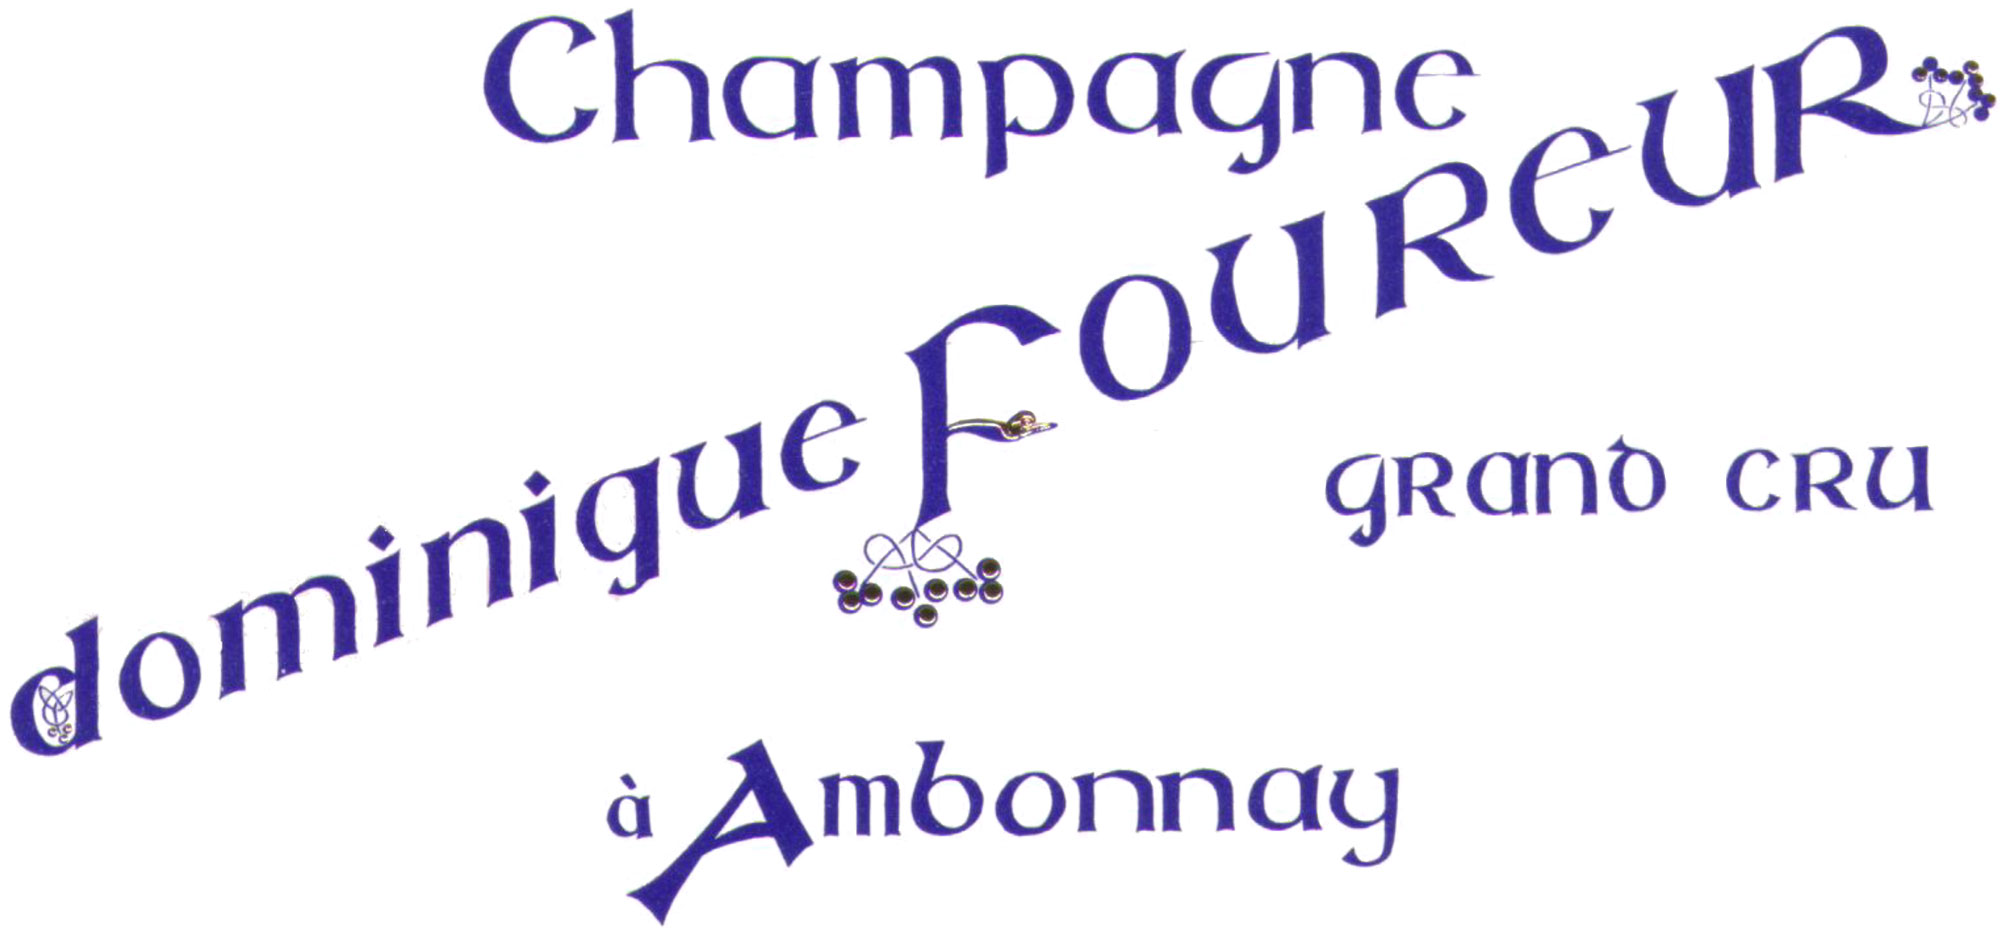 Champagne Dominique Foureur